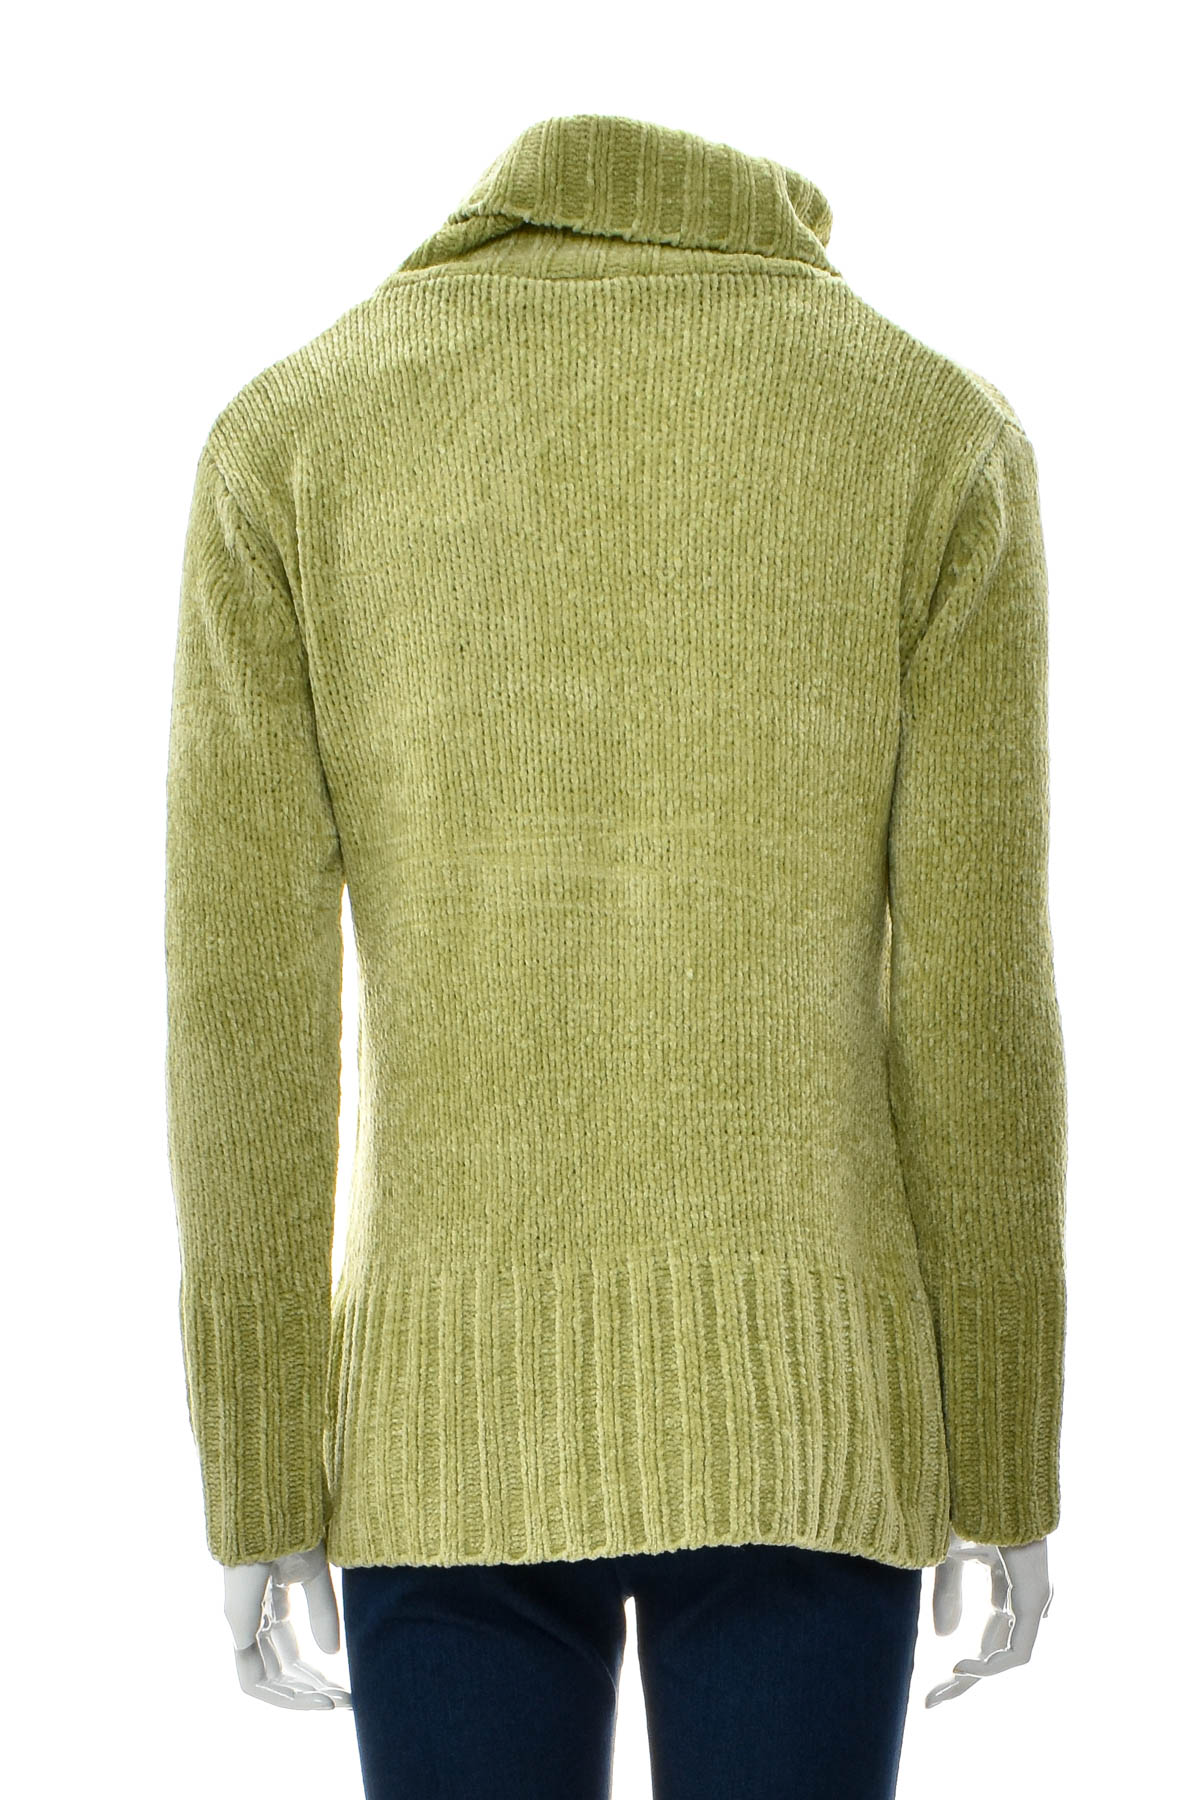 Γυναικείο πουλόβερ - Yoors - 1